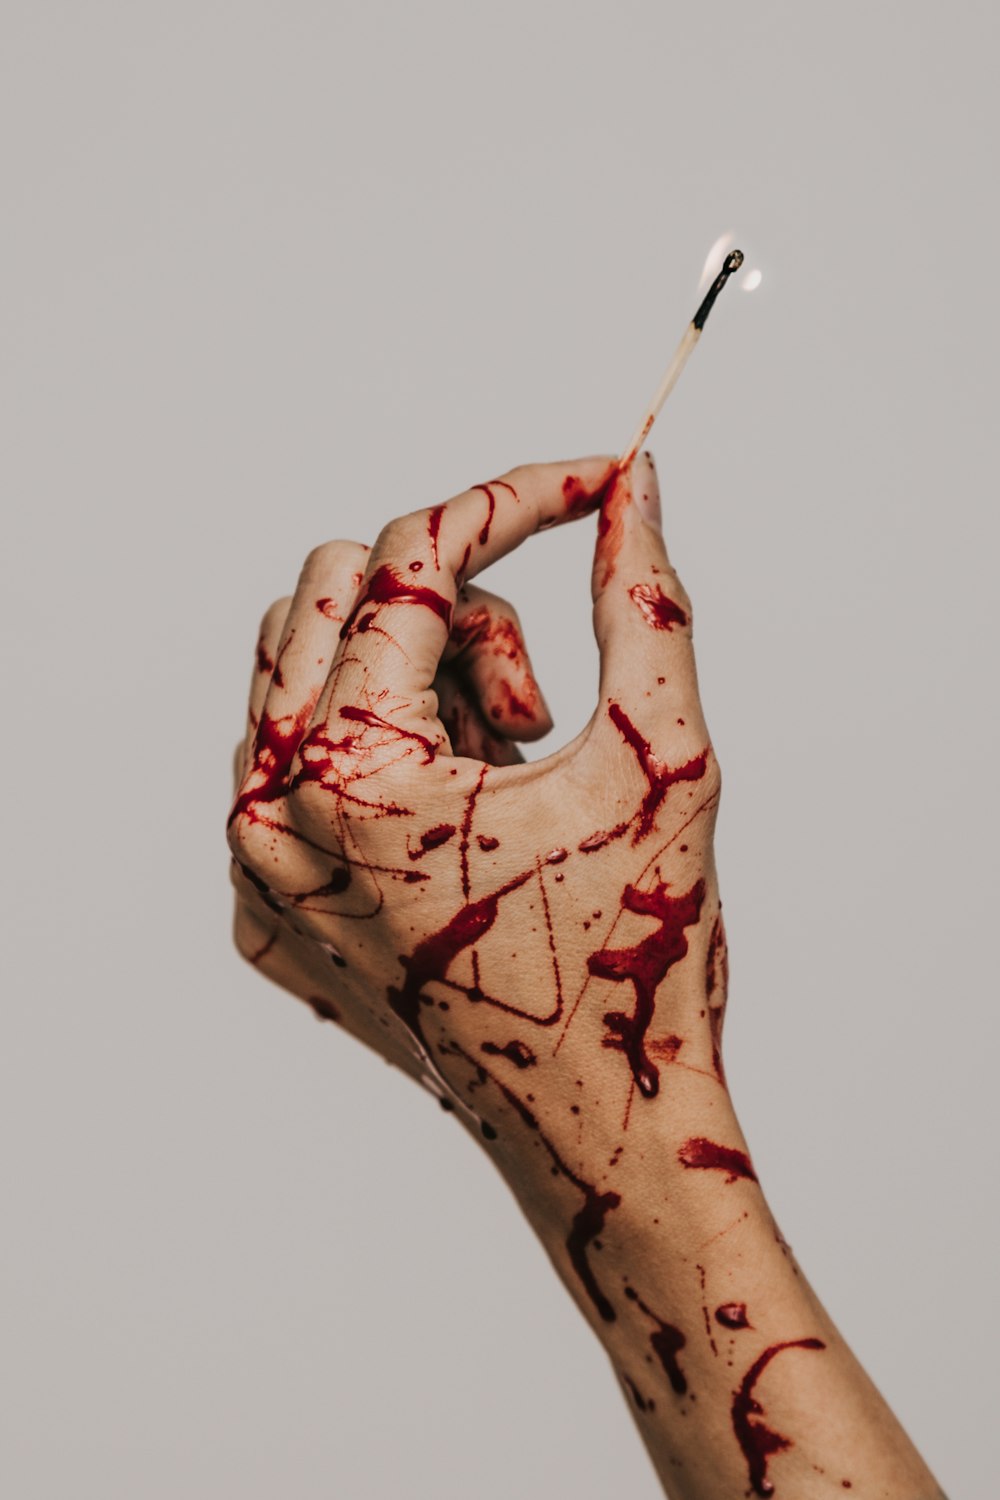 Una mano cubierta de salpicaduras de sangre sosteniendo un fósforo encendido